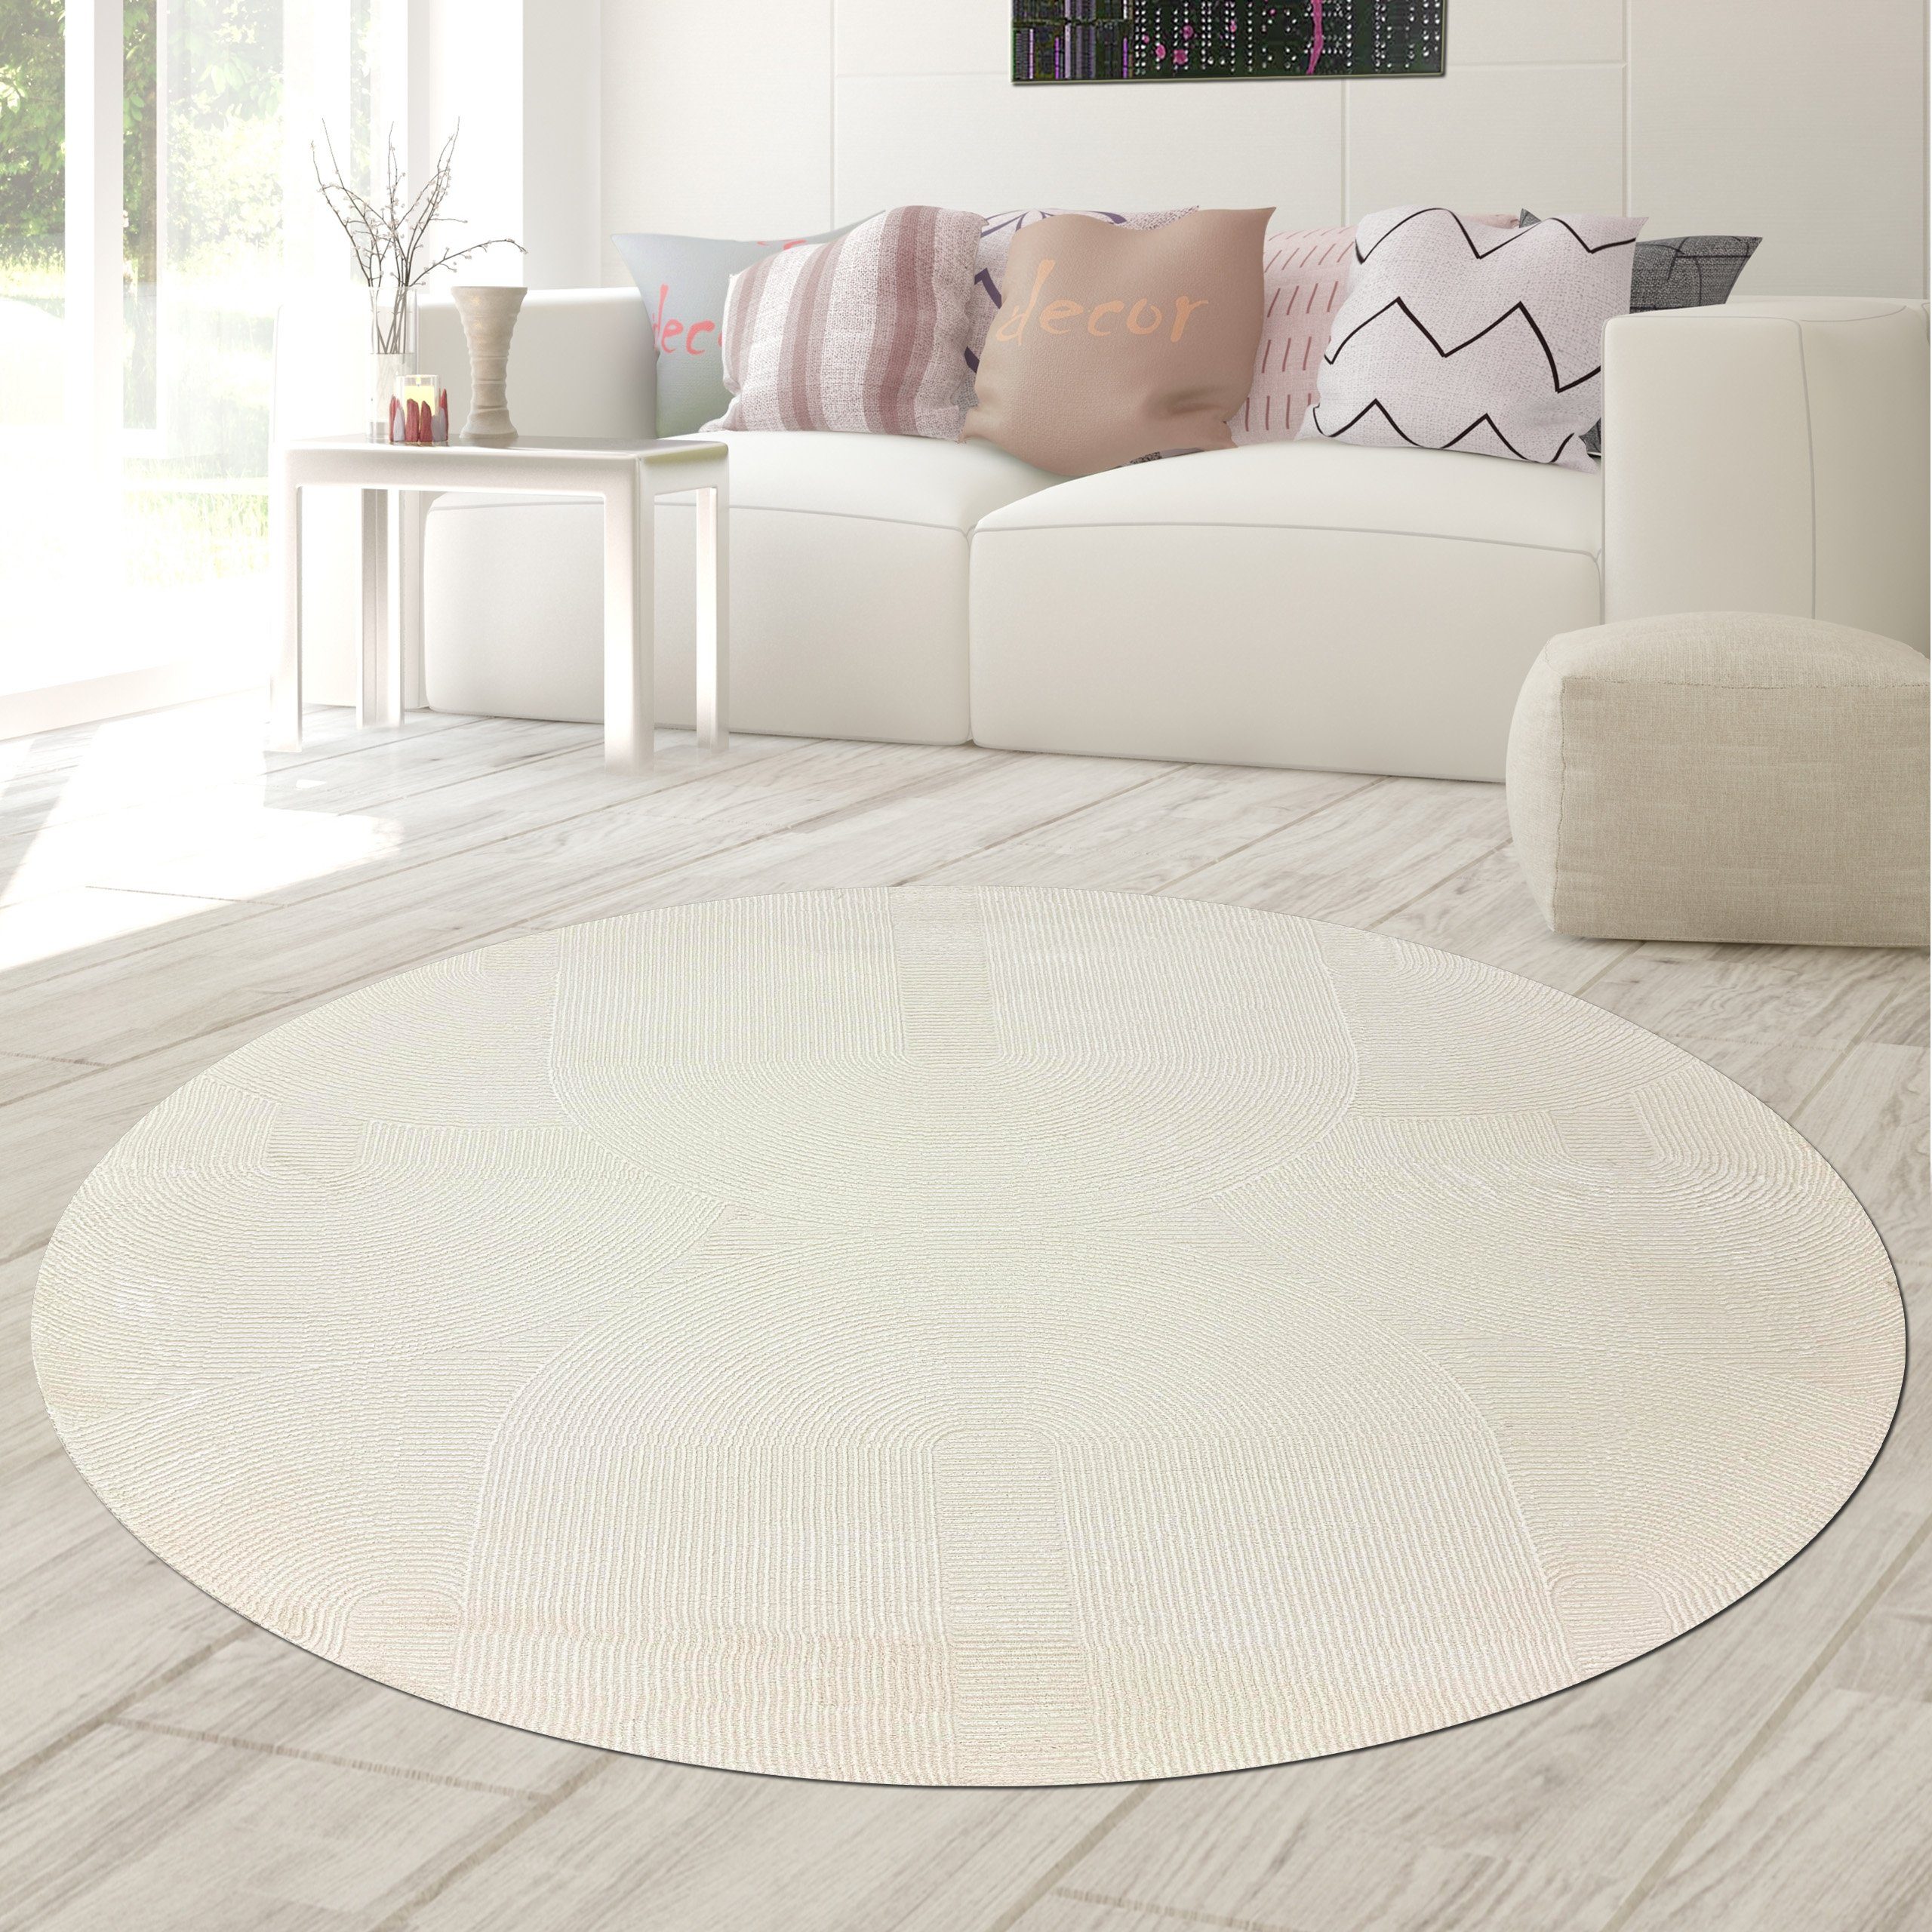 Teppich Recycle Teppich mit modernen ovalen Formen liniert in creme, Teppich-Traum, rund, Höhe: 12 mm